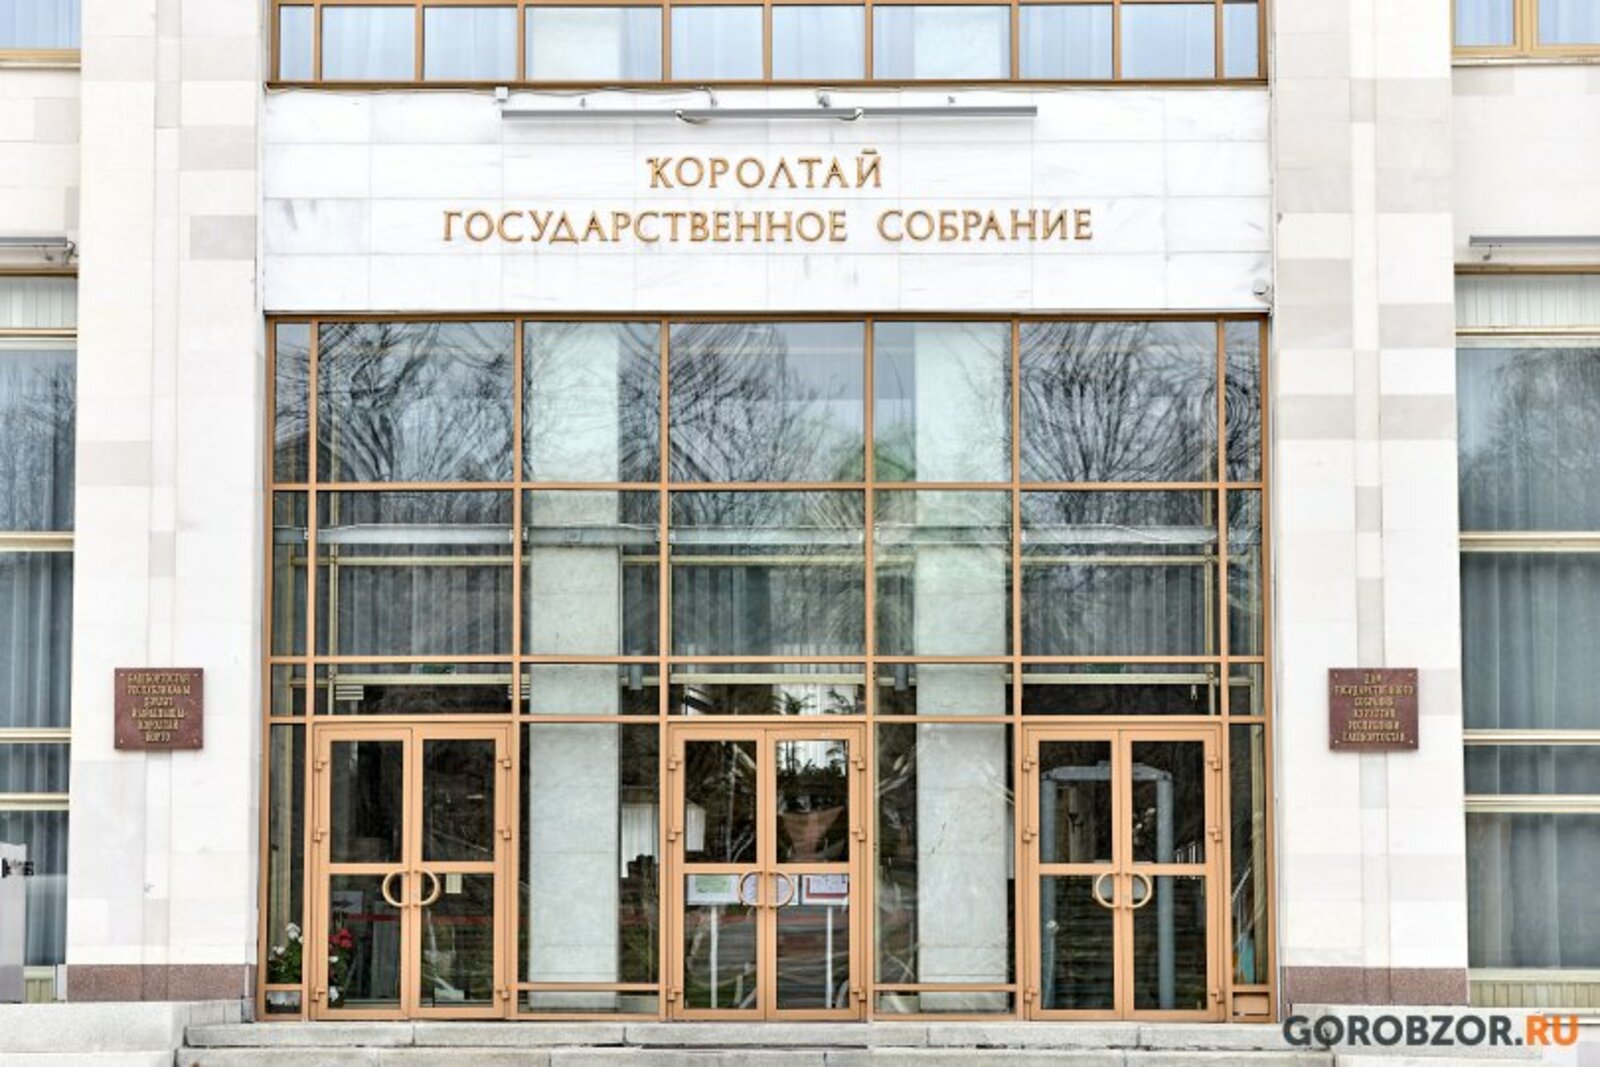 Депутаты Башкирии примут закон об обучении братьев и сестер в одной школе 17 февраля